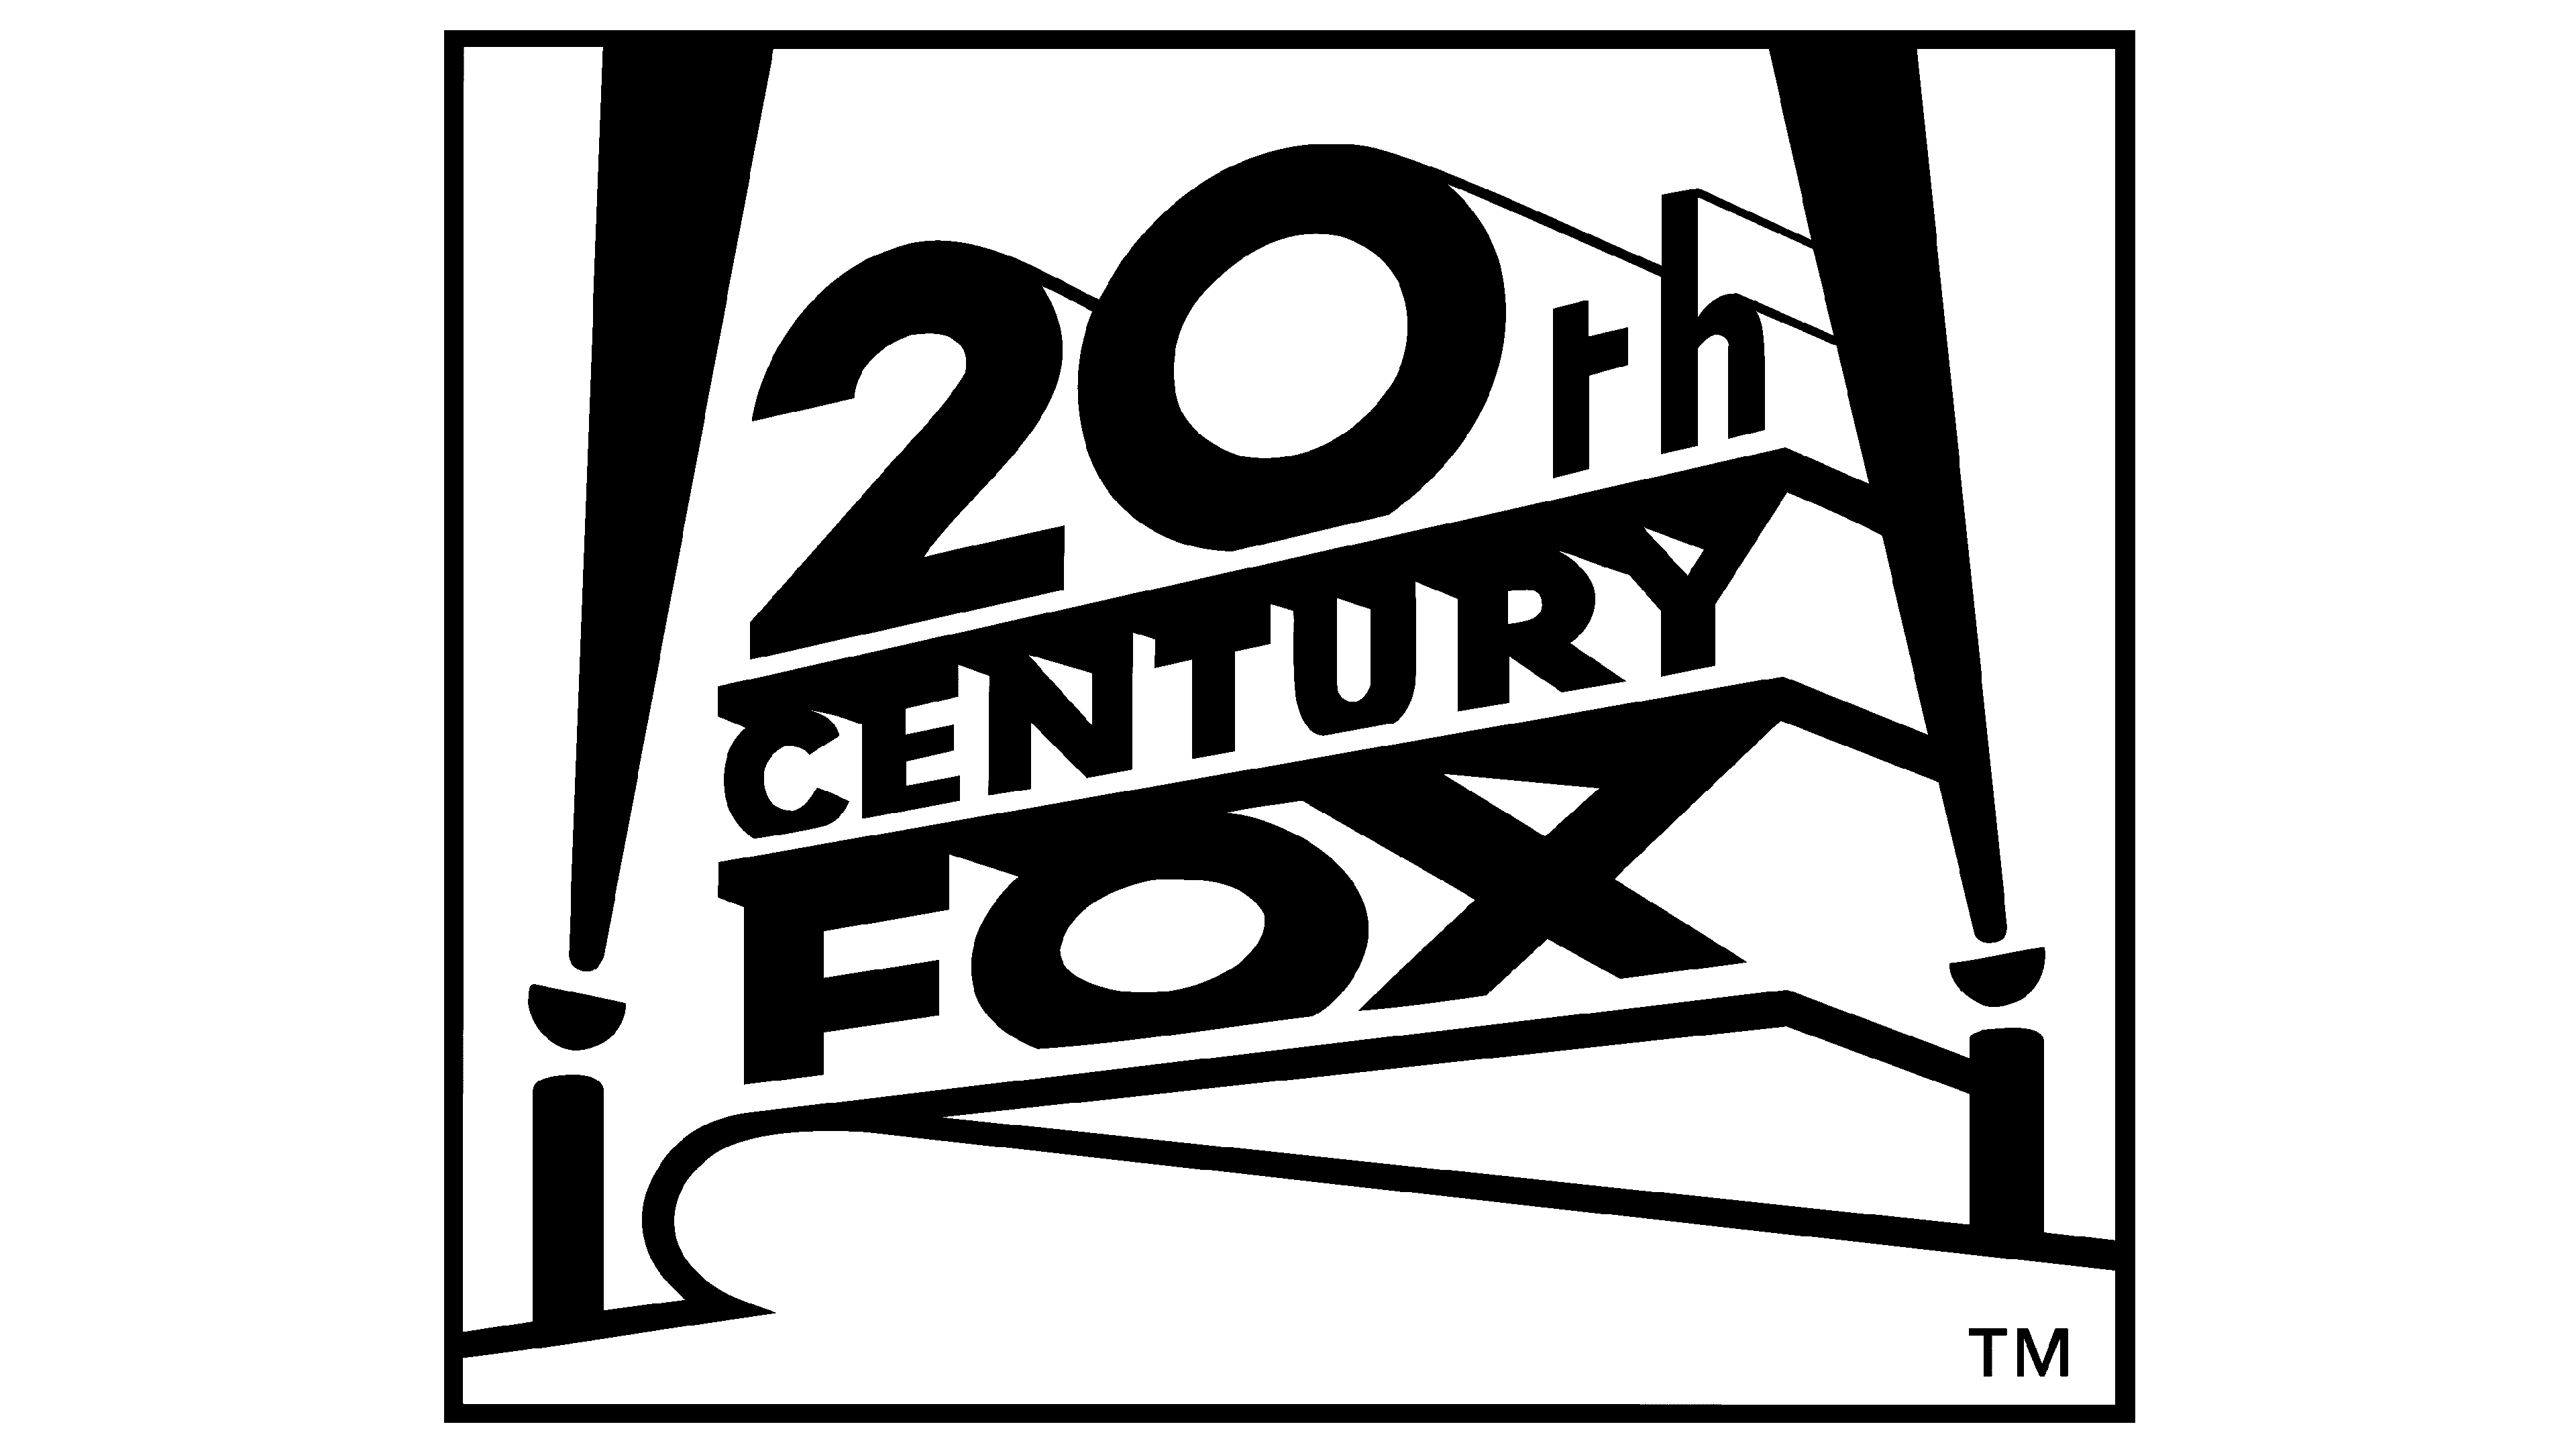 20th Century Fox logo History